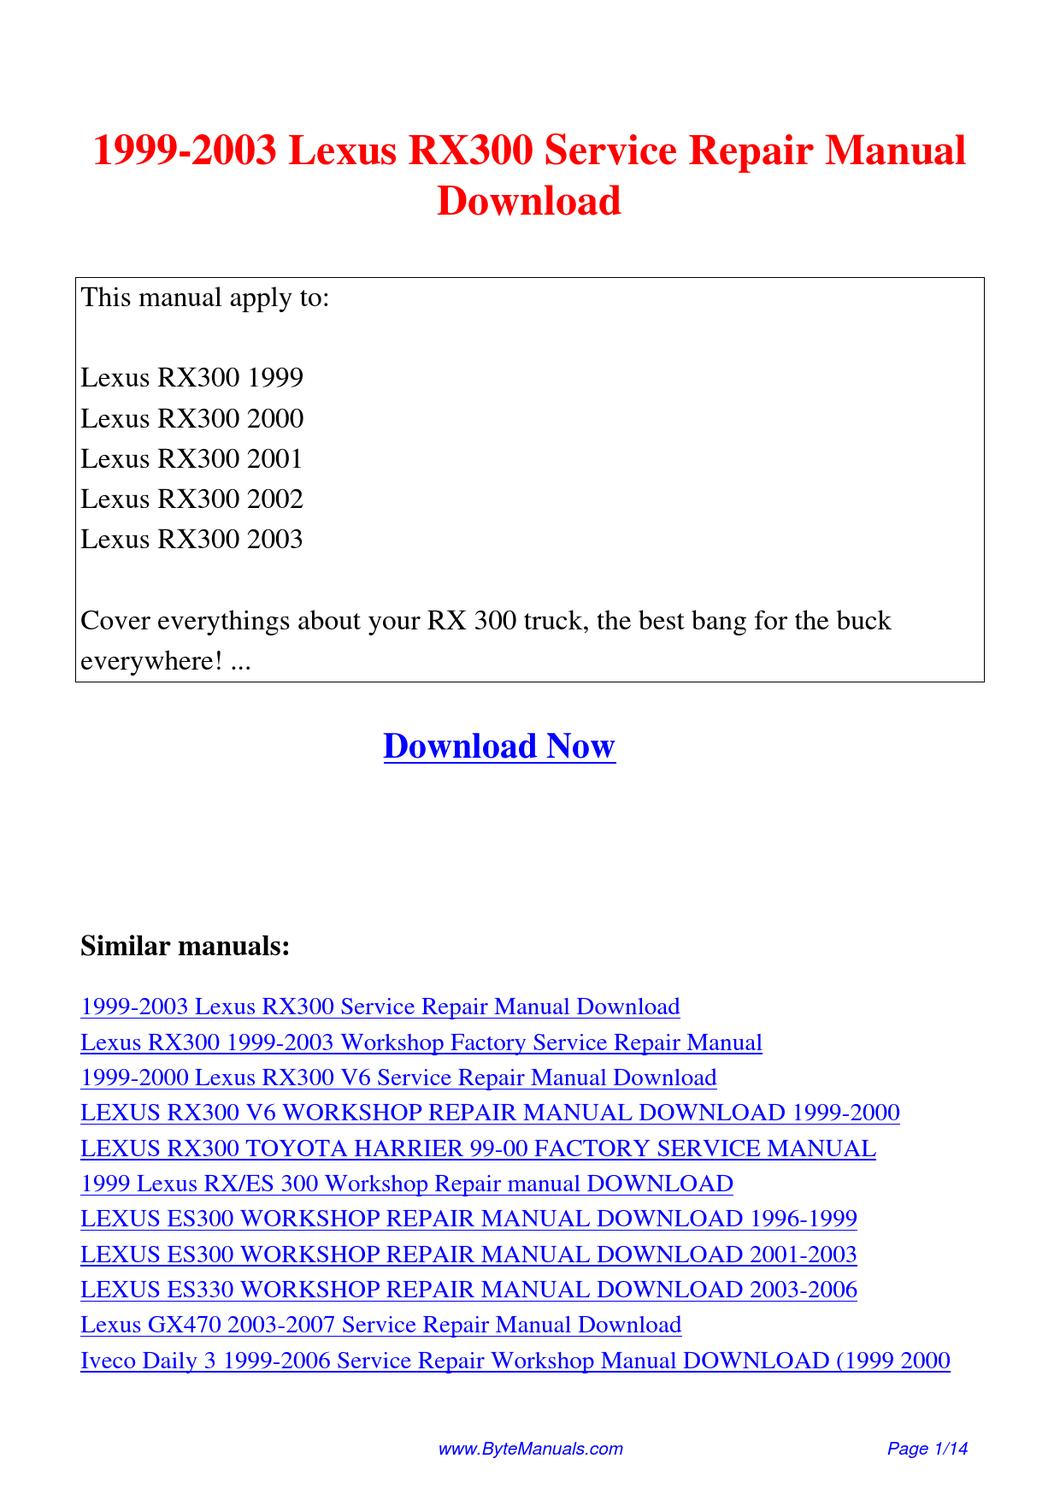 2000 lexus rx300 repair service manual download